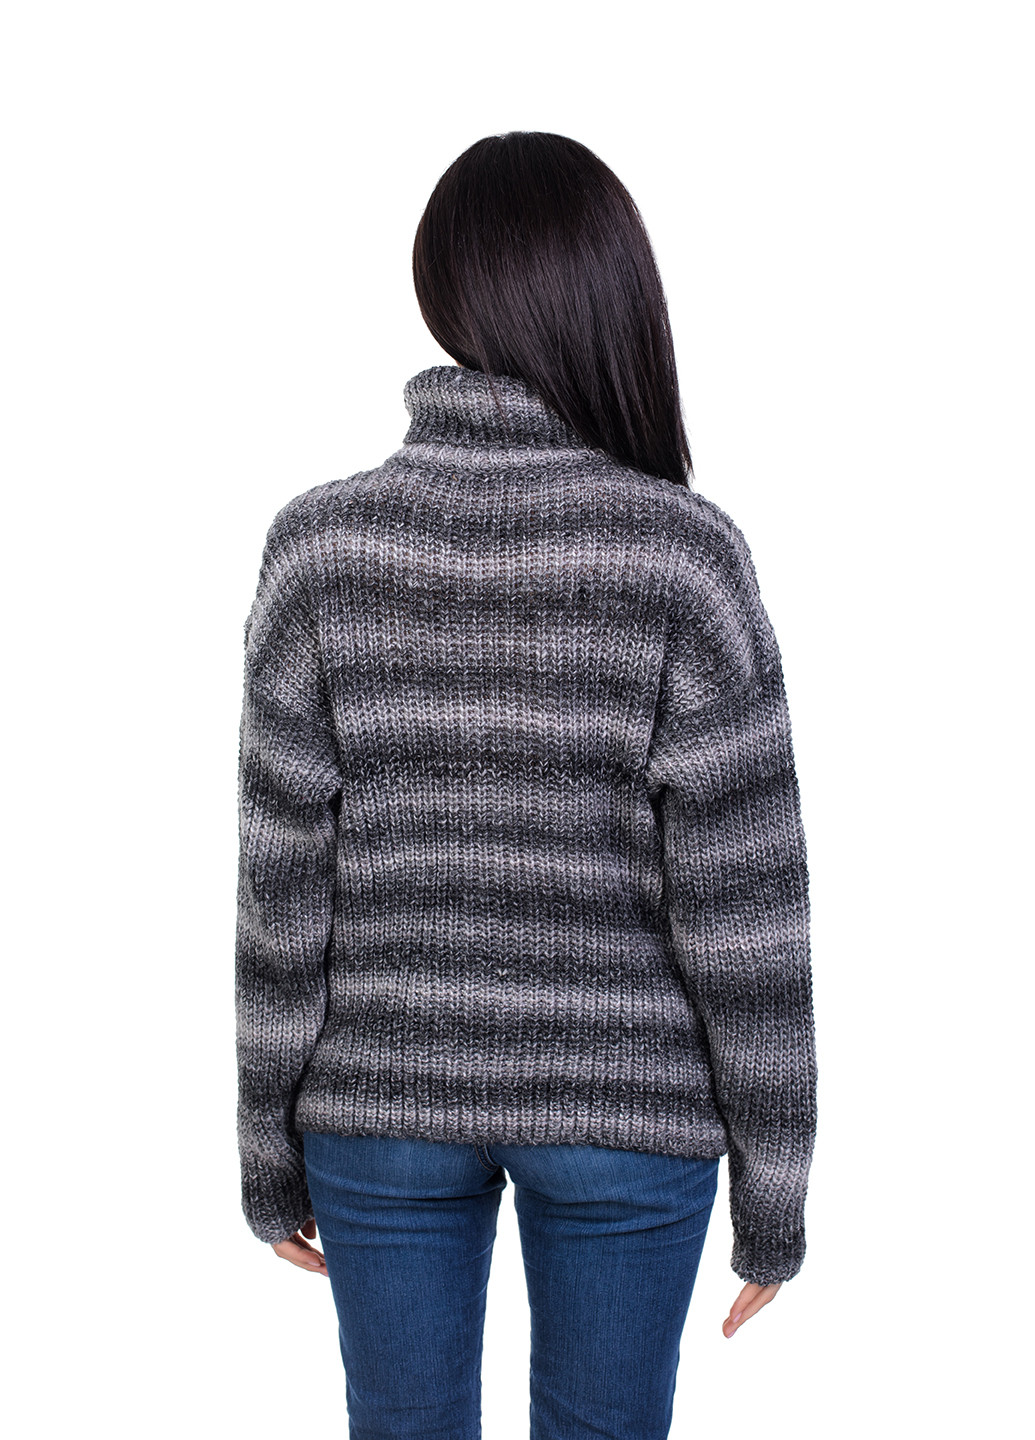 Серый демисезонный свитер женский джемпер Bakhur